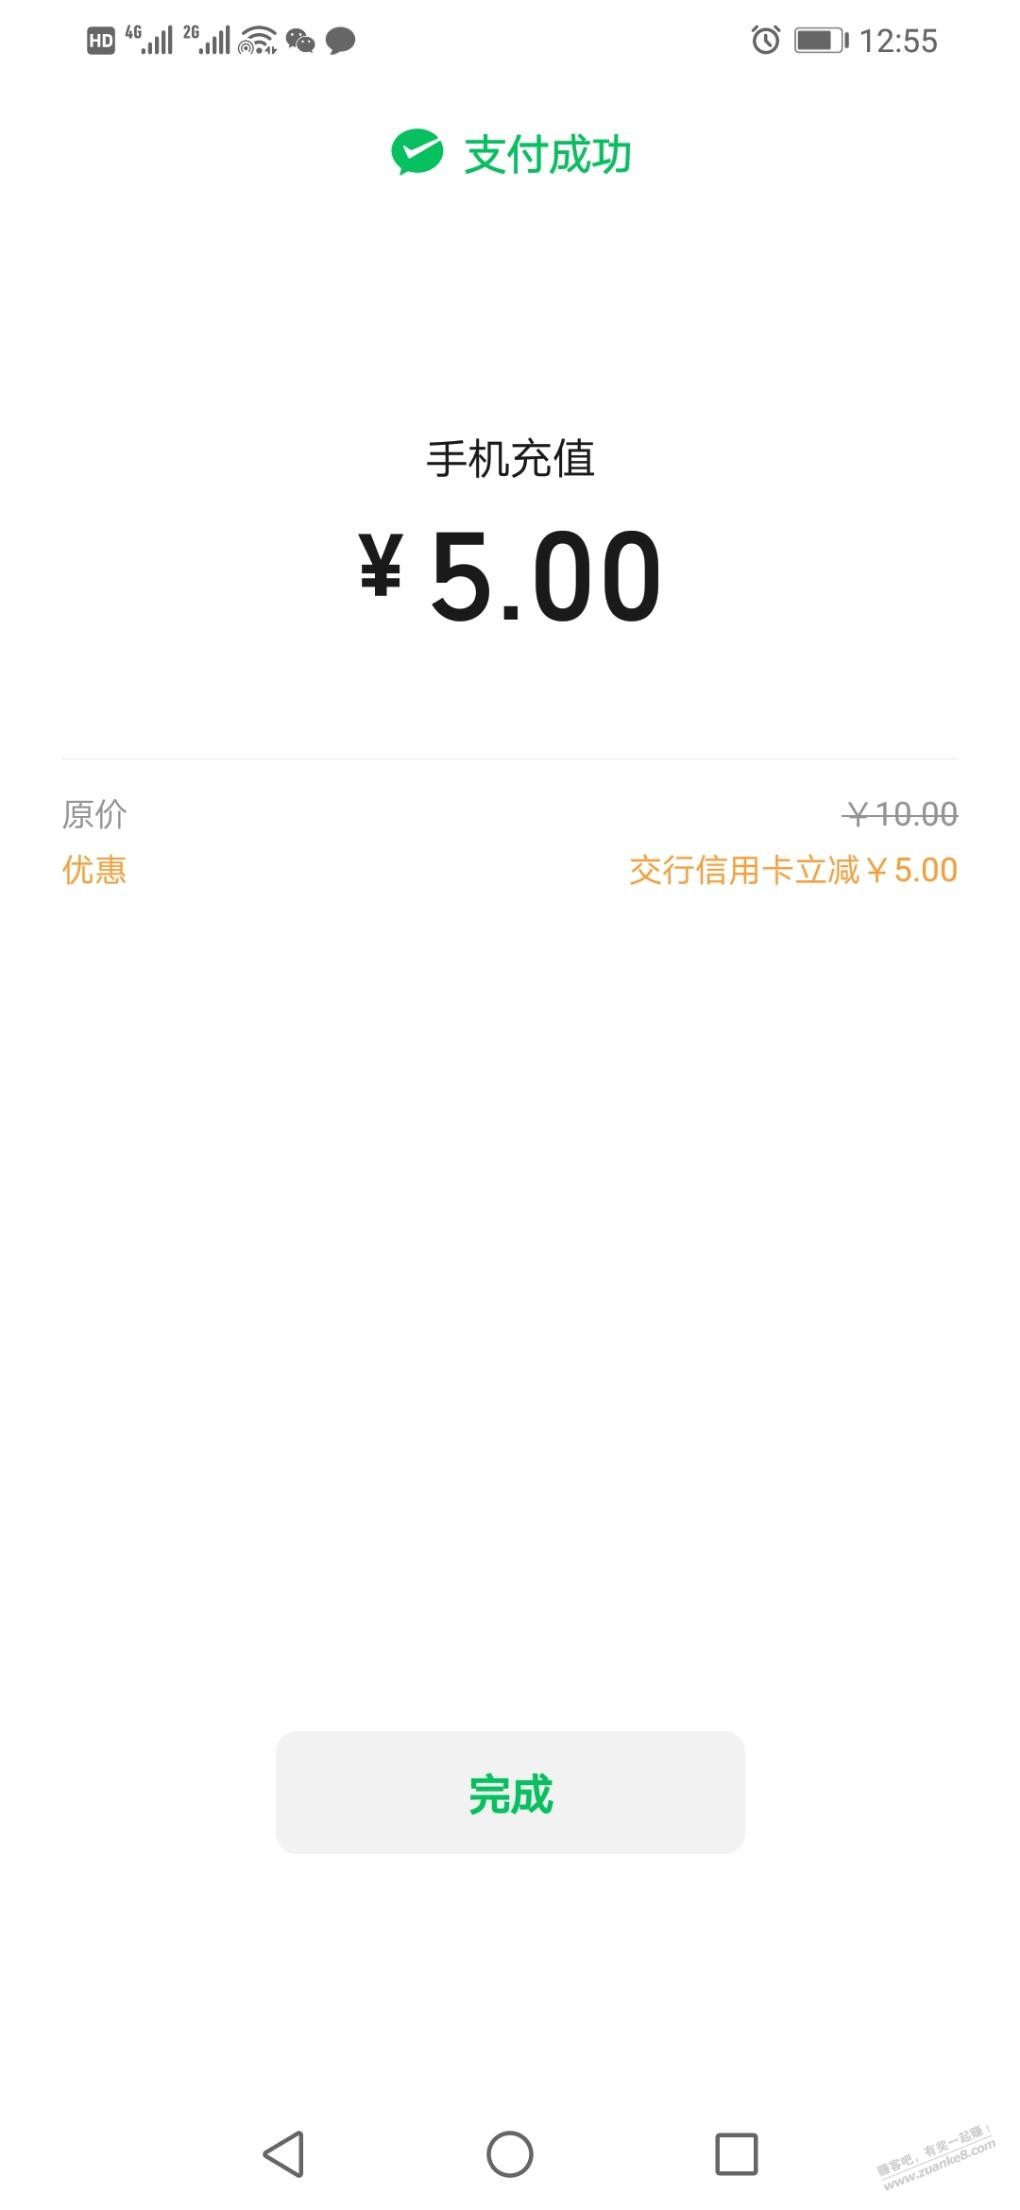 V.x话费充值交通银行立减5元-惠小助(52huixz.com)